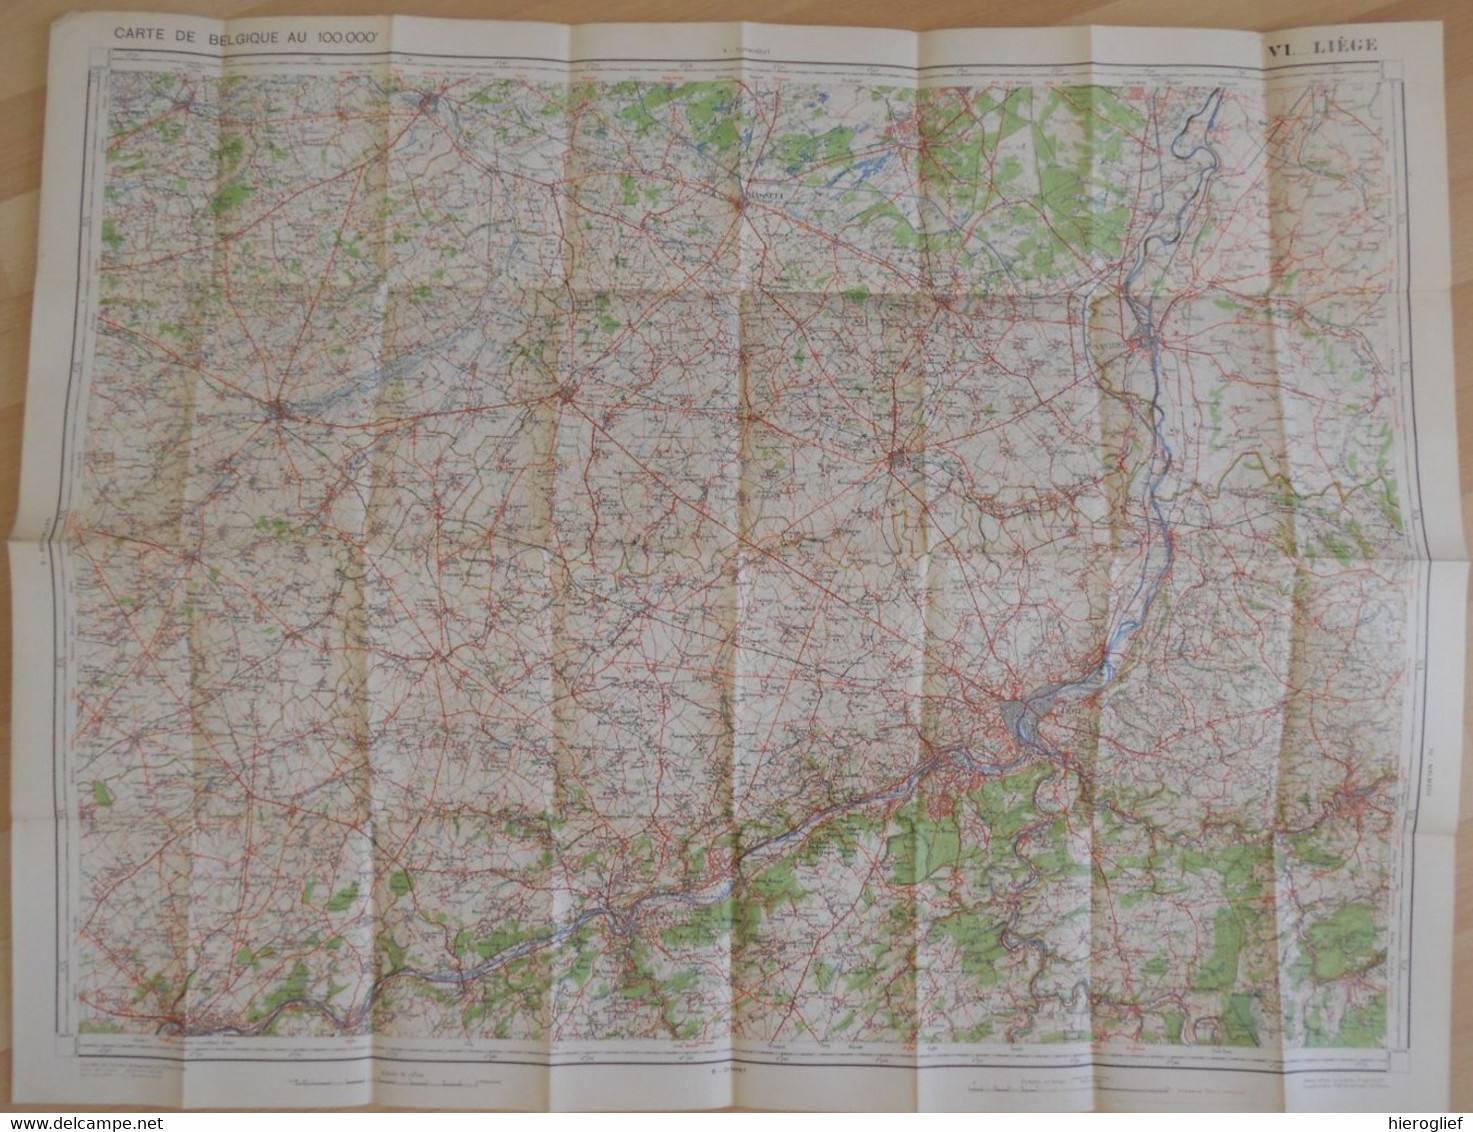 Carte De BELGIQUE Nr 6 LIEGE Institut Cartographique Militaire Impression Litho 1933 Maastricht Hasselt Tongeren Tienen - Mapas Topográficas